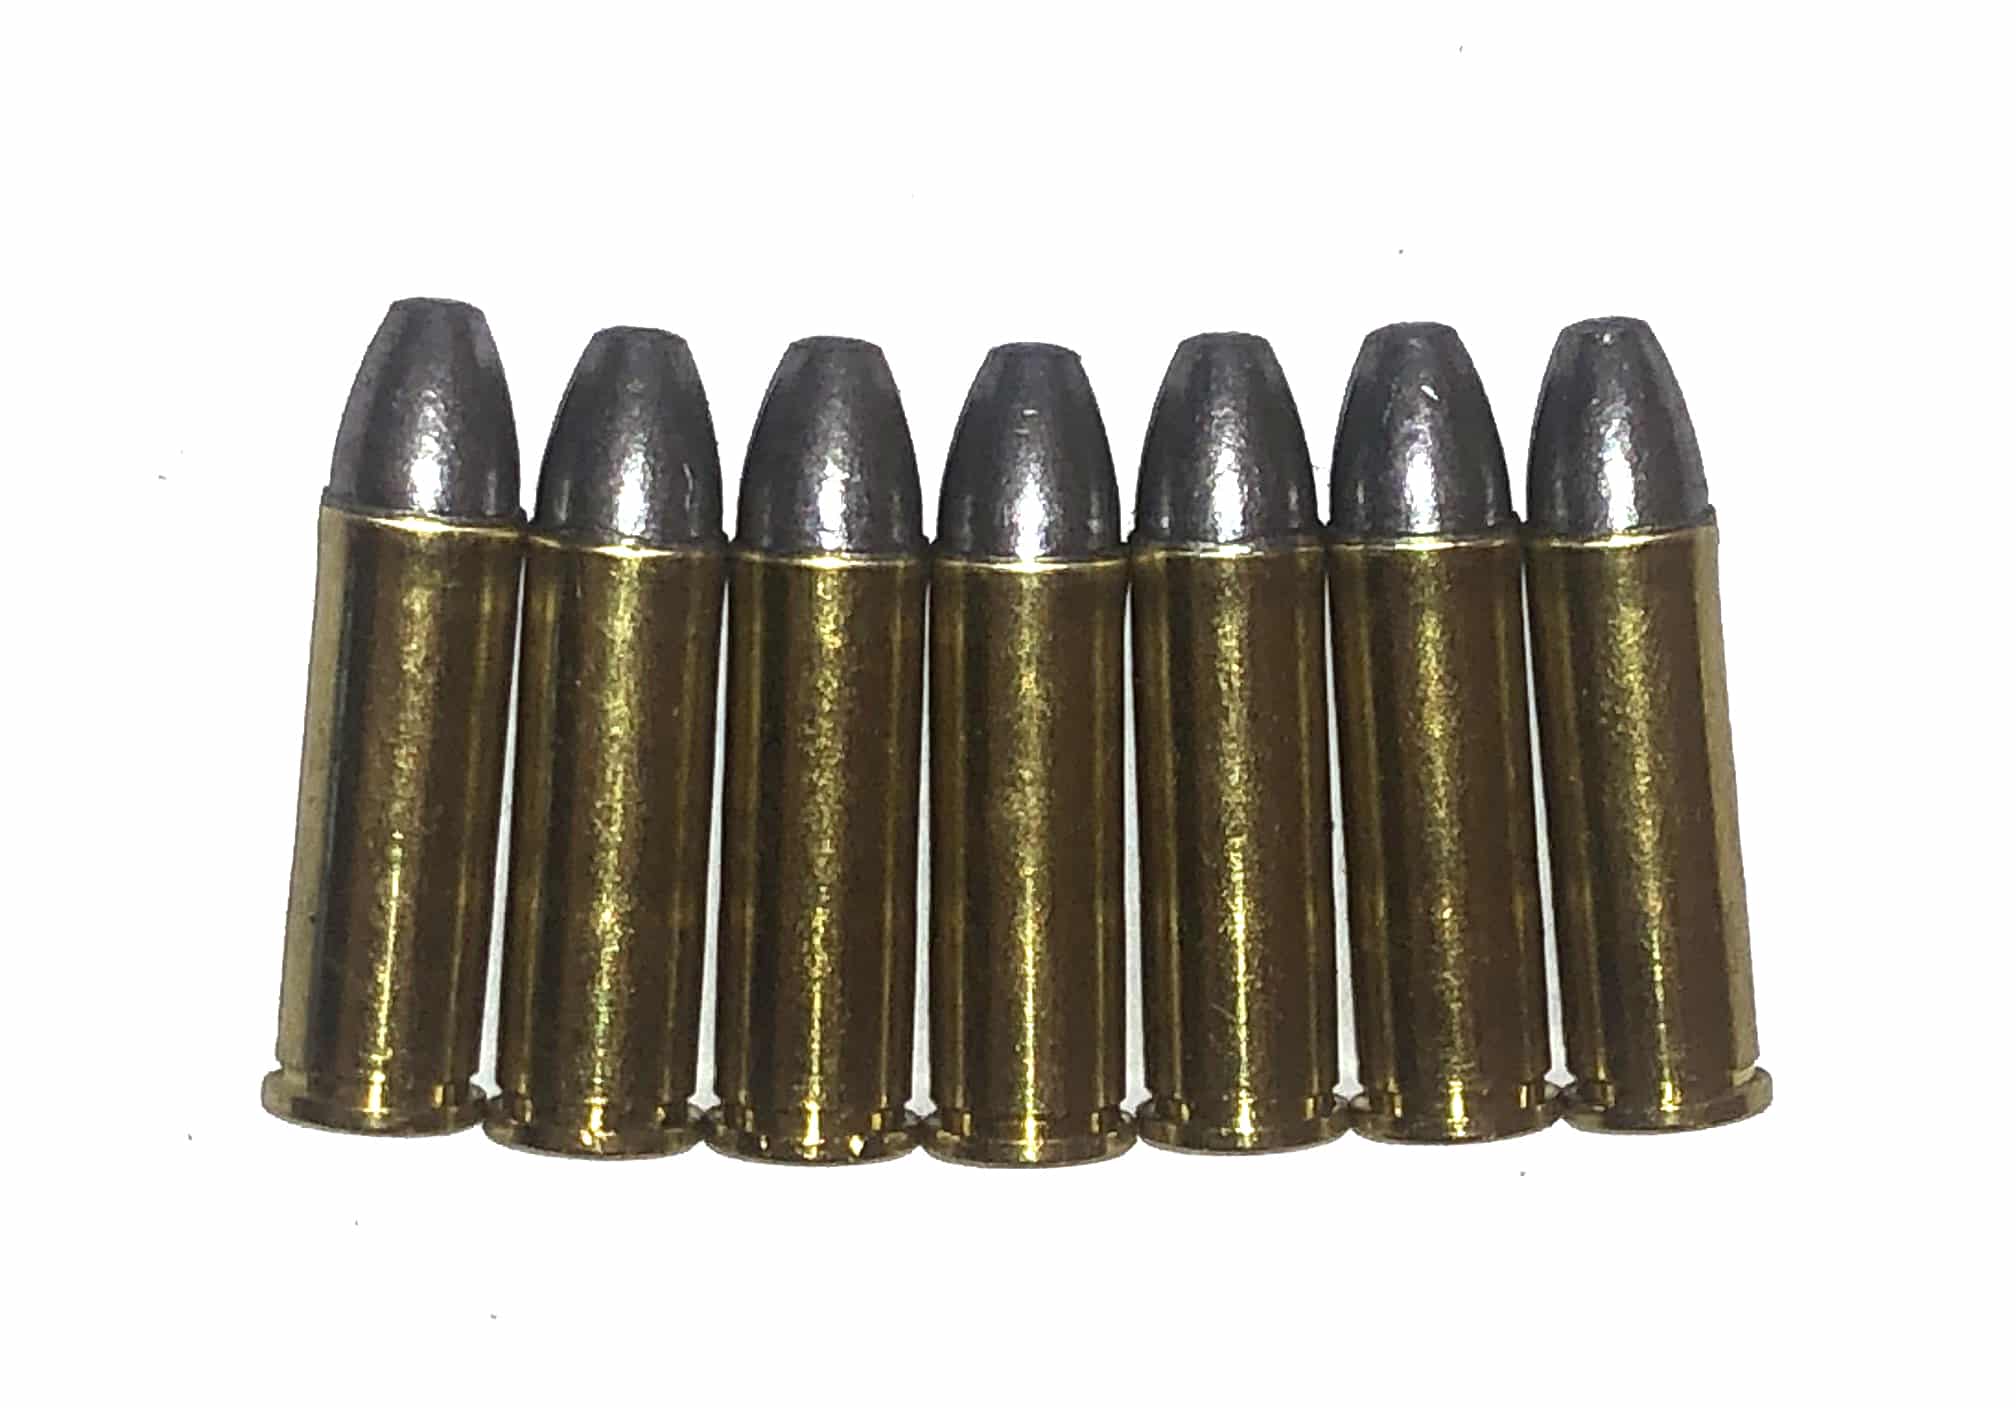 8mm Rast-Gasser Snap Caps Dummy Rounds Fake Bullets J&M Spec INERT